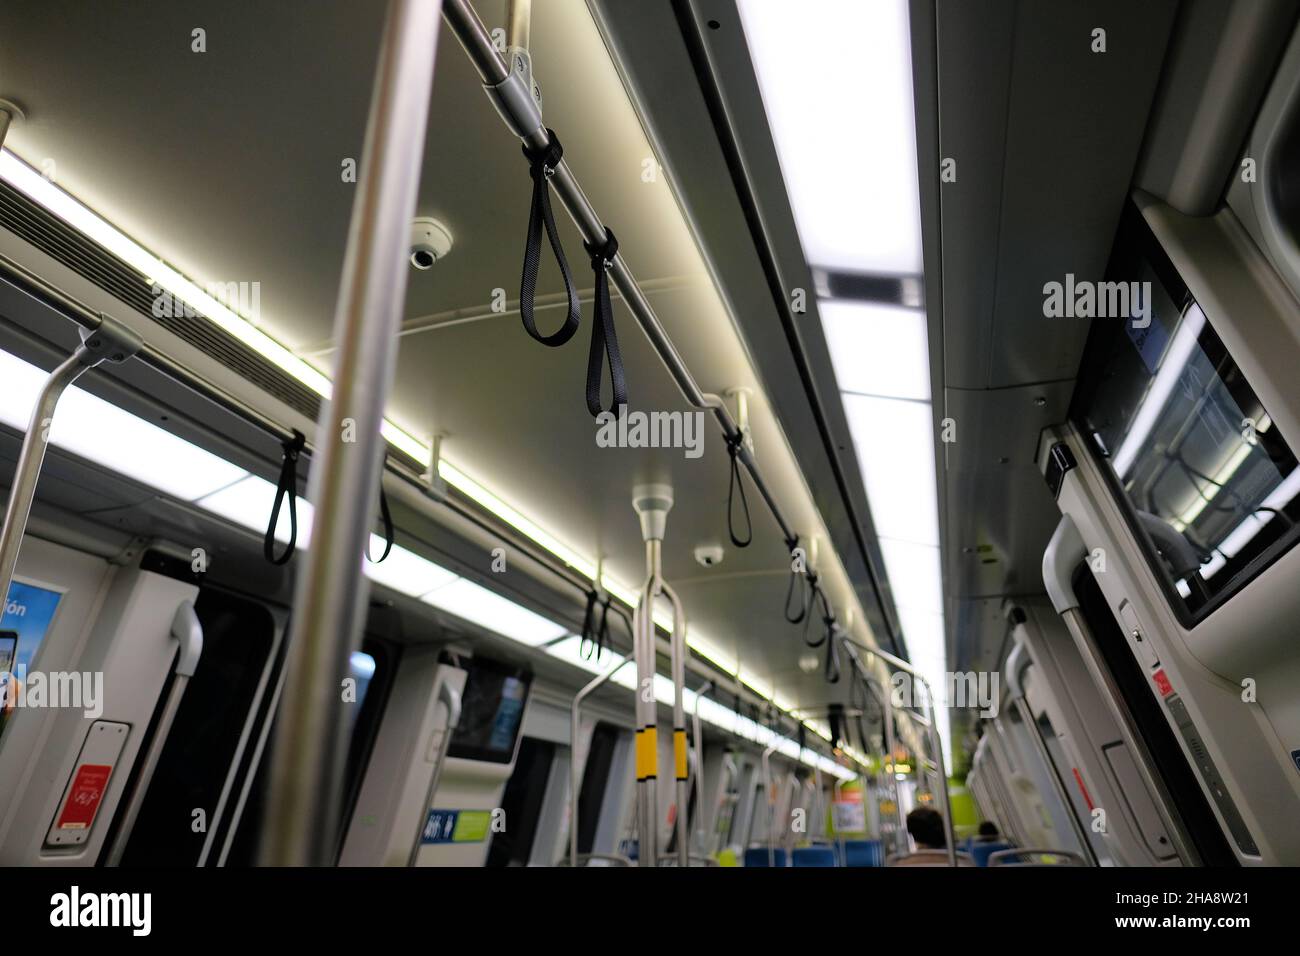 Innenansicht eines Bay Area Rapid Transit-U-Bahn-Wagens; San Francisco, Kaliforniens BART-Nahverkehr; Handschlaufen. Stockfoto